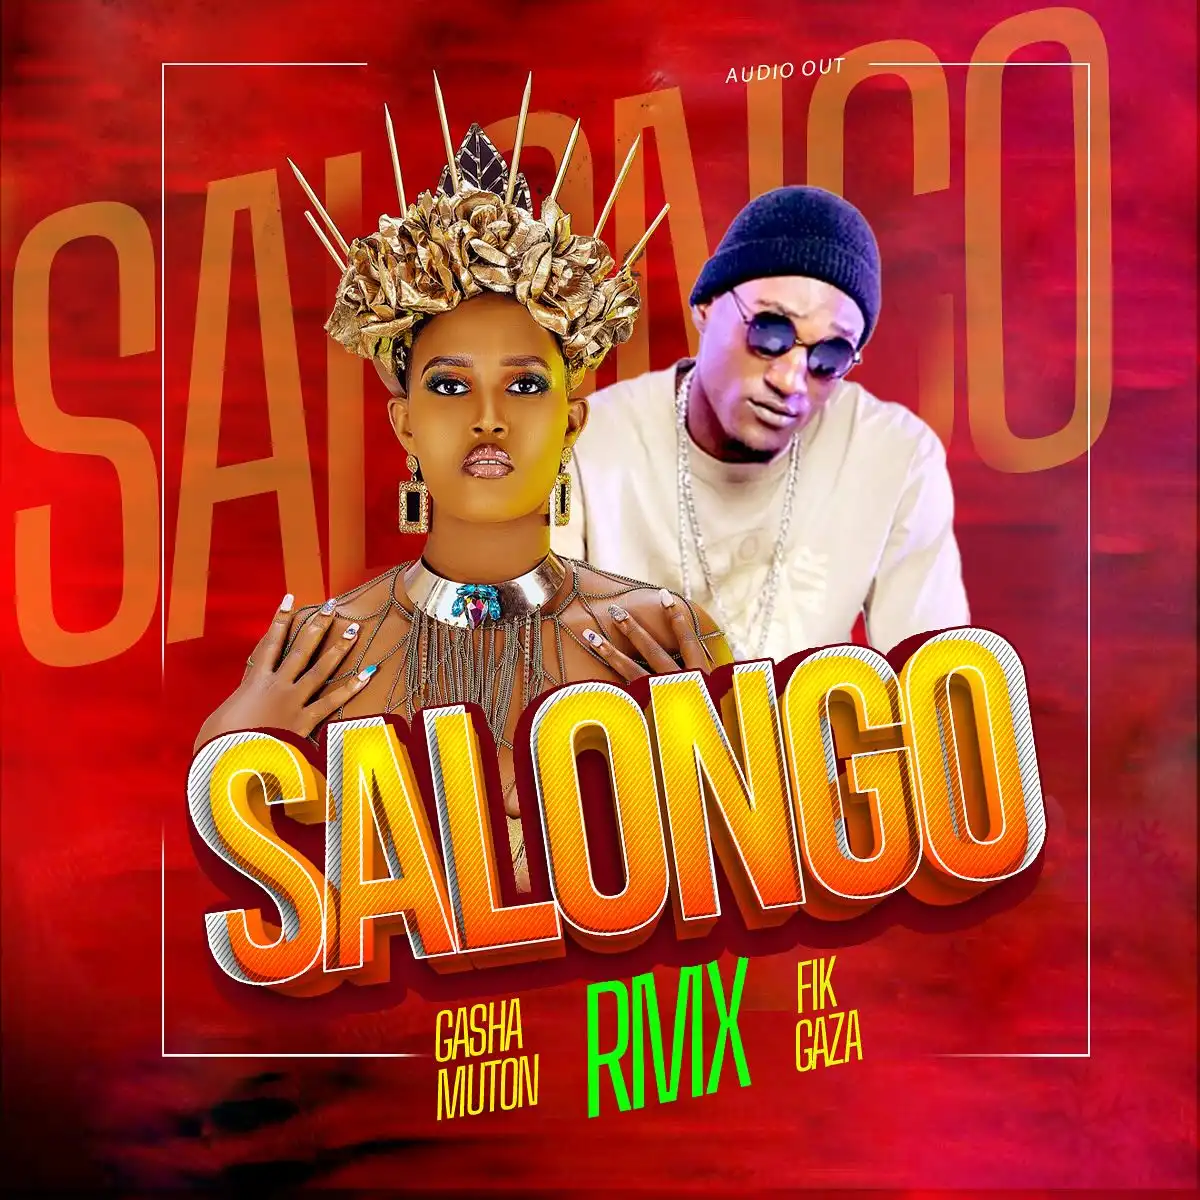 fik-gaza-salongo-remix-album-cover